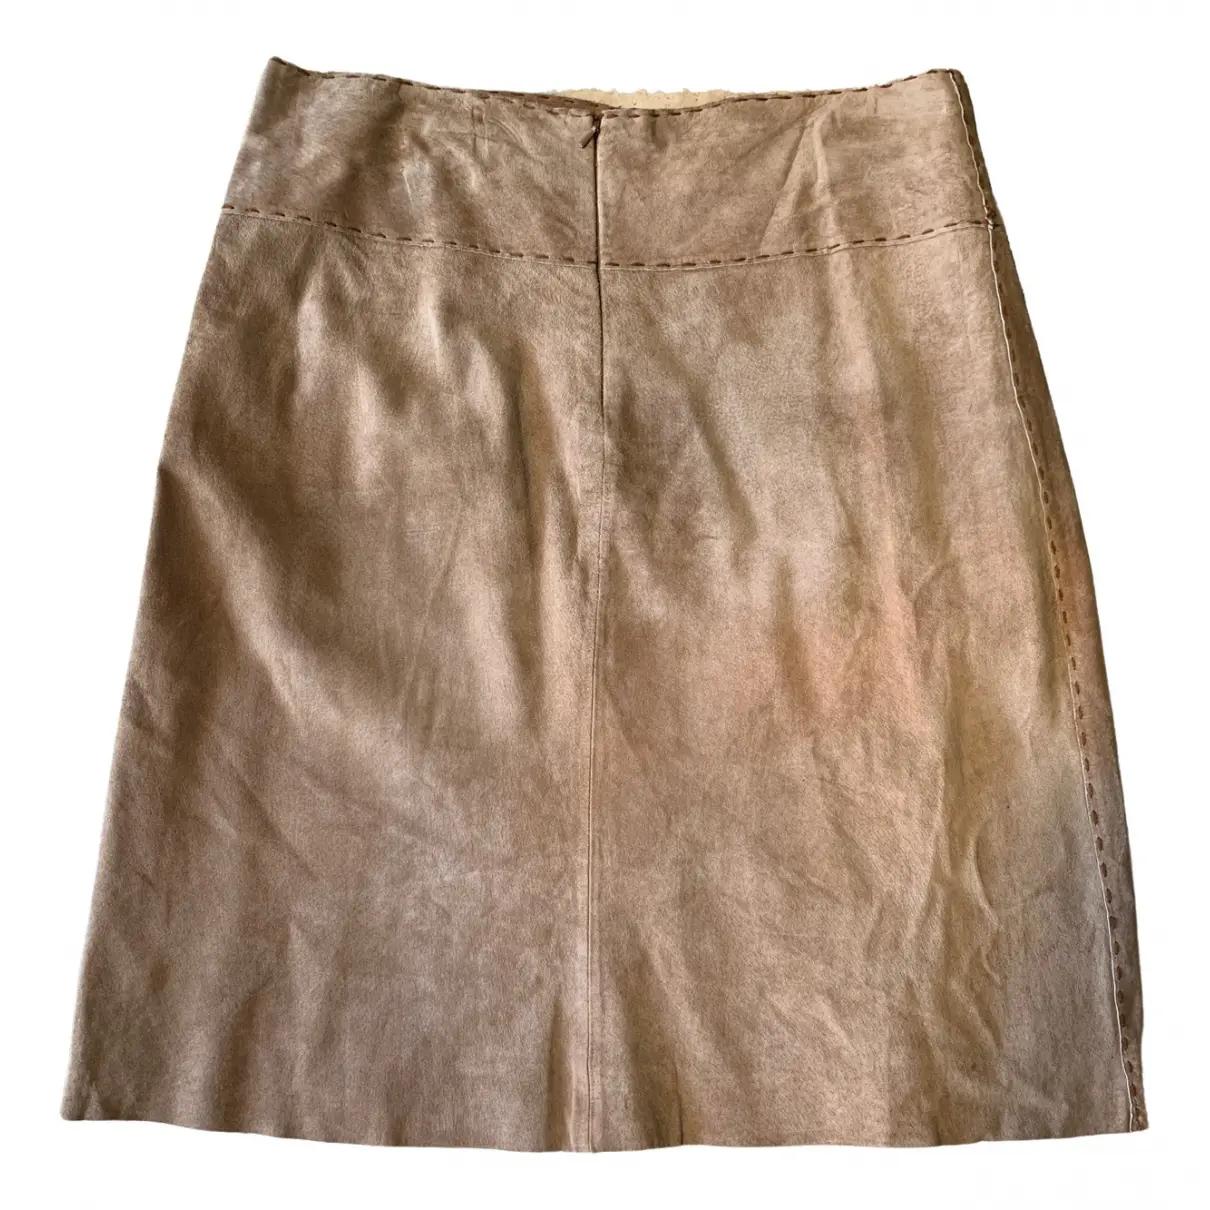 Leather mid-length skirt RENÉ DERHY